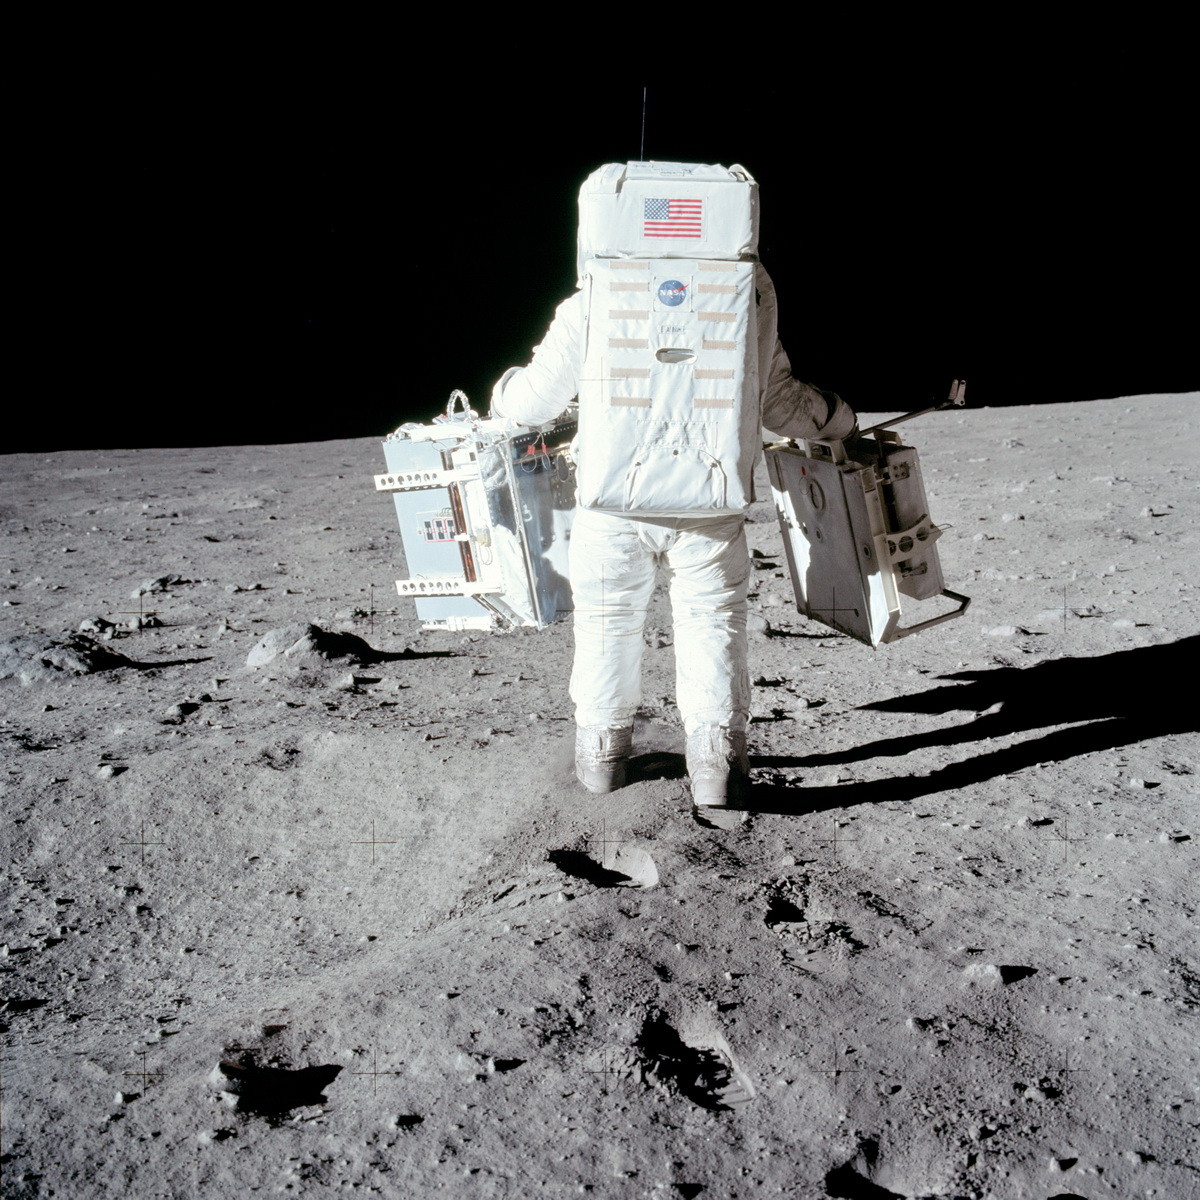 Олдрин относит приборы подальше от лунного модуля